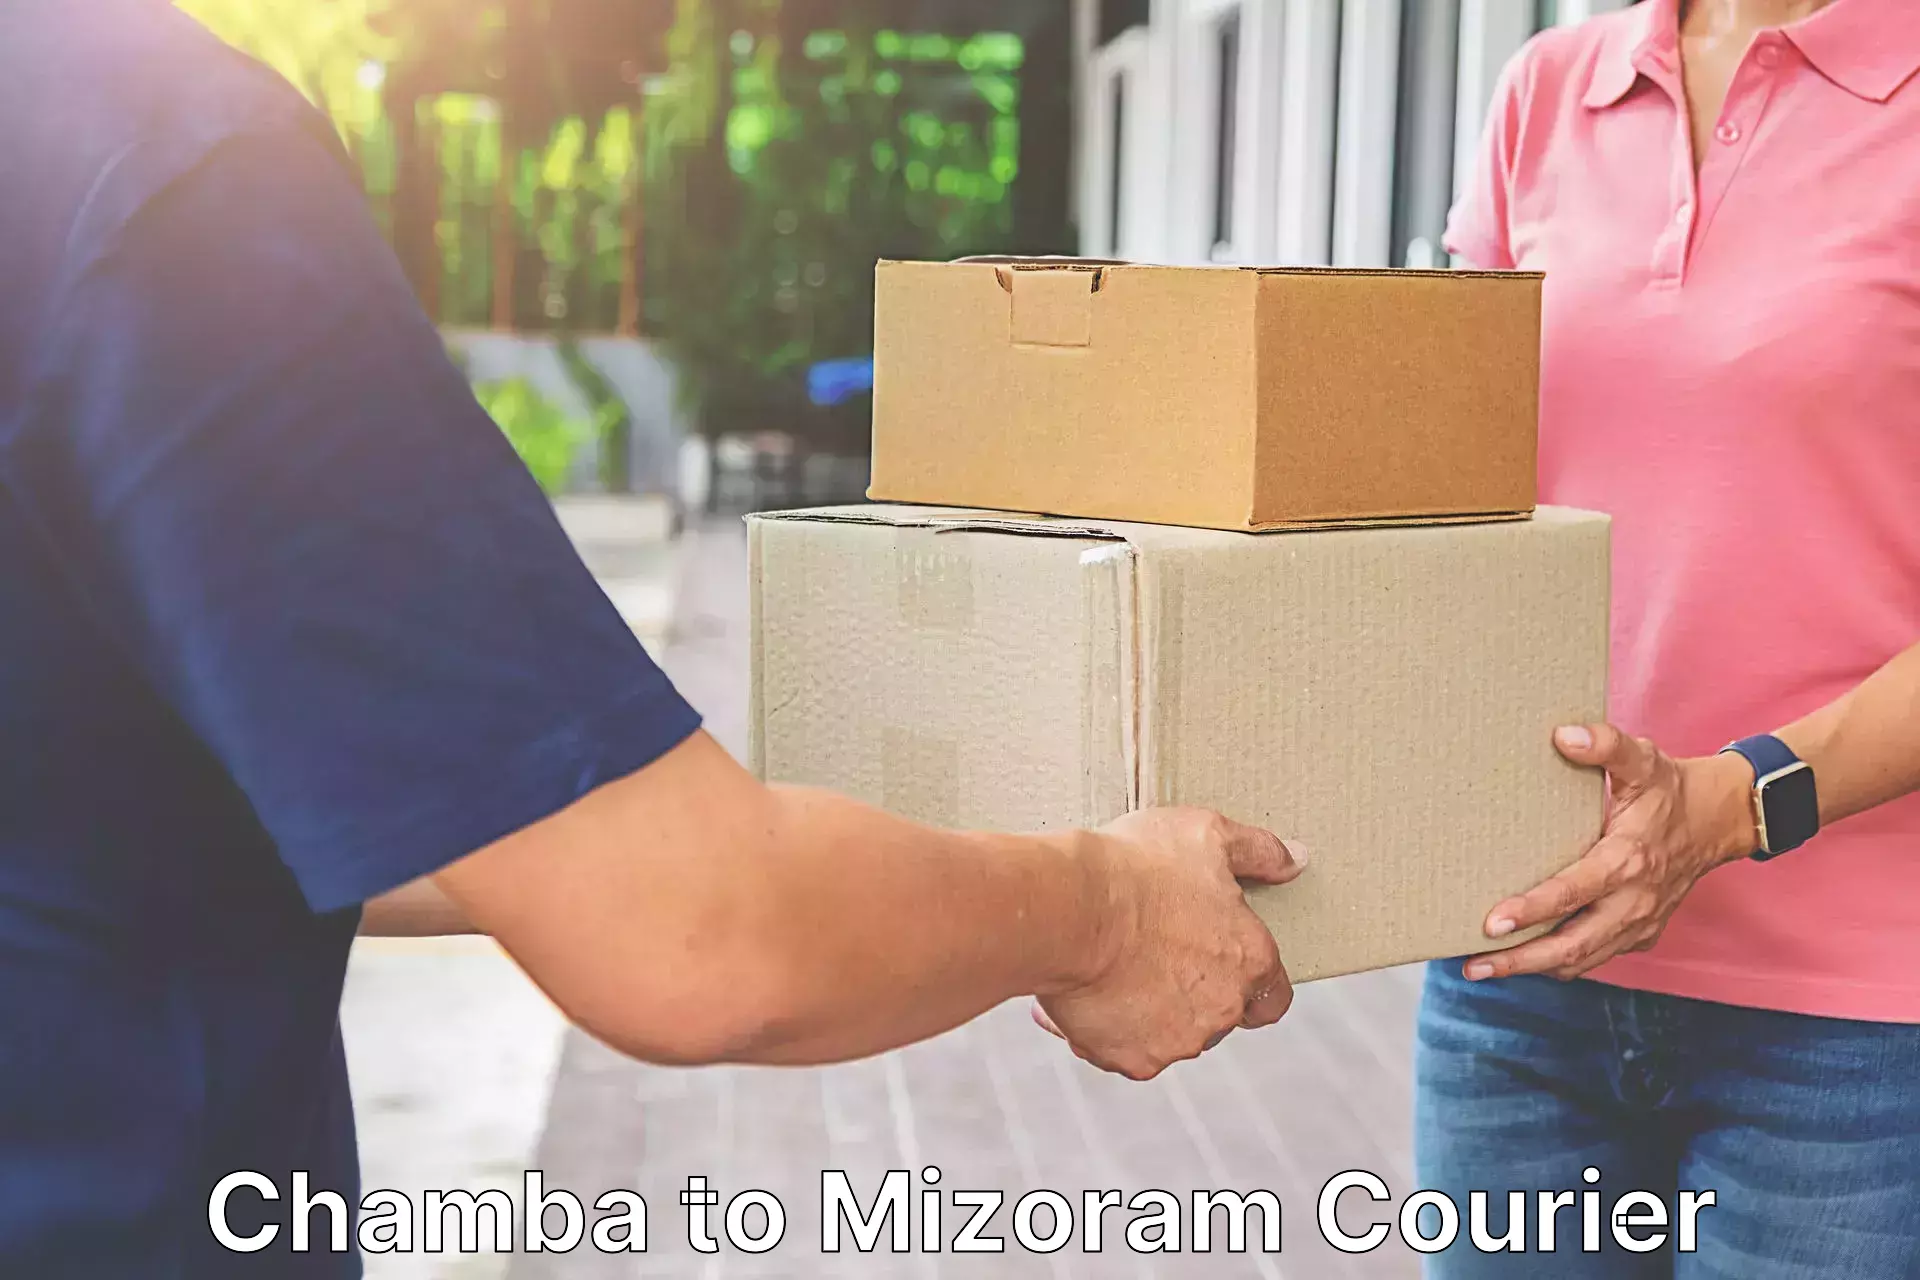 Smart shipping technology Chamba to Mizoram